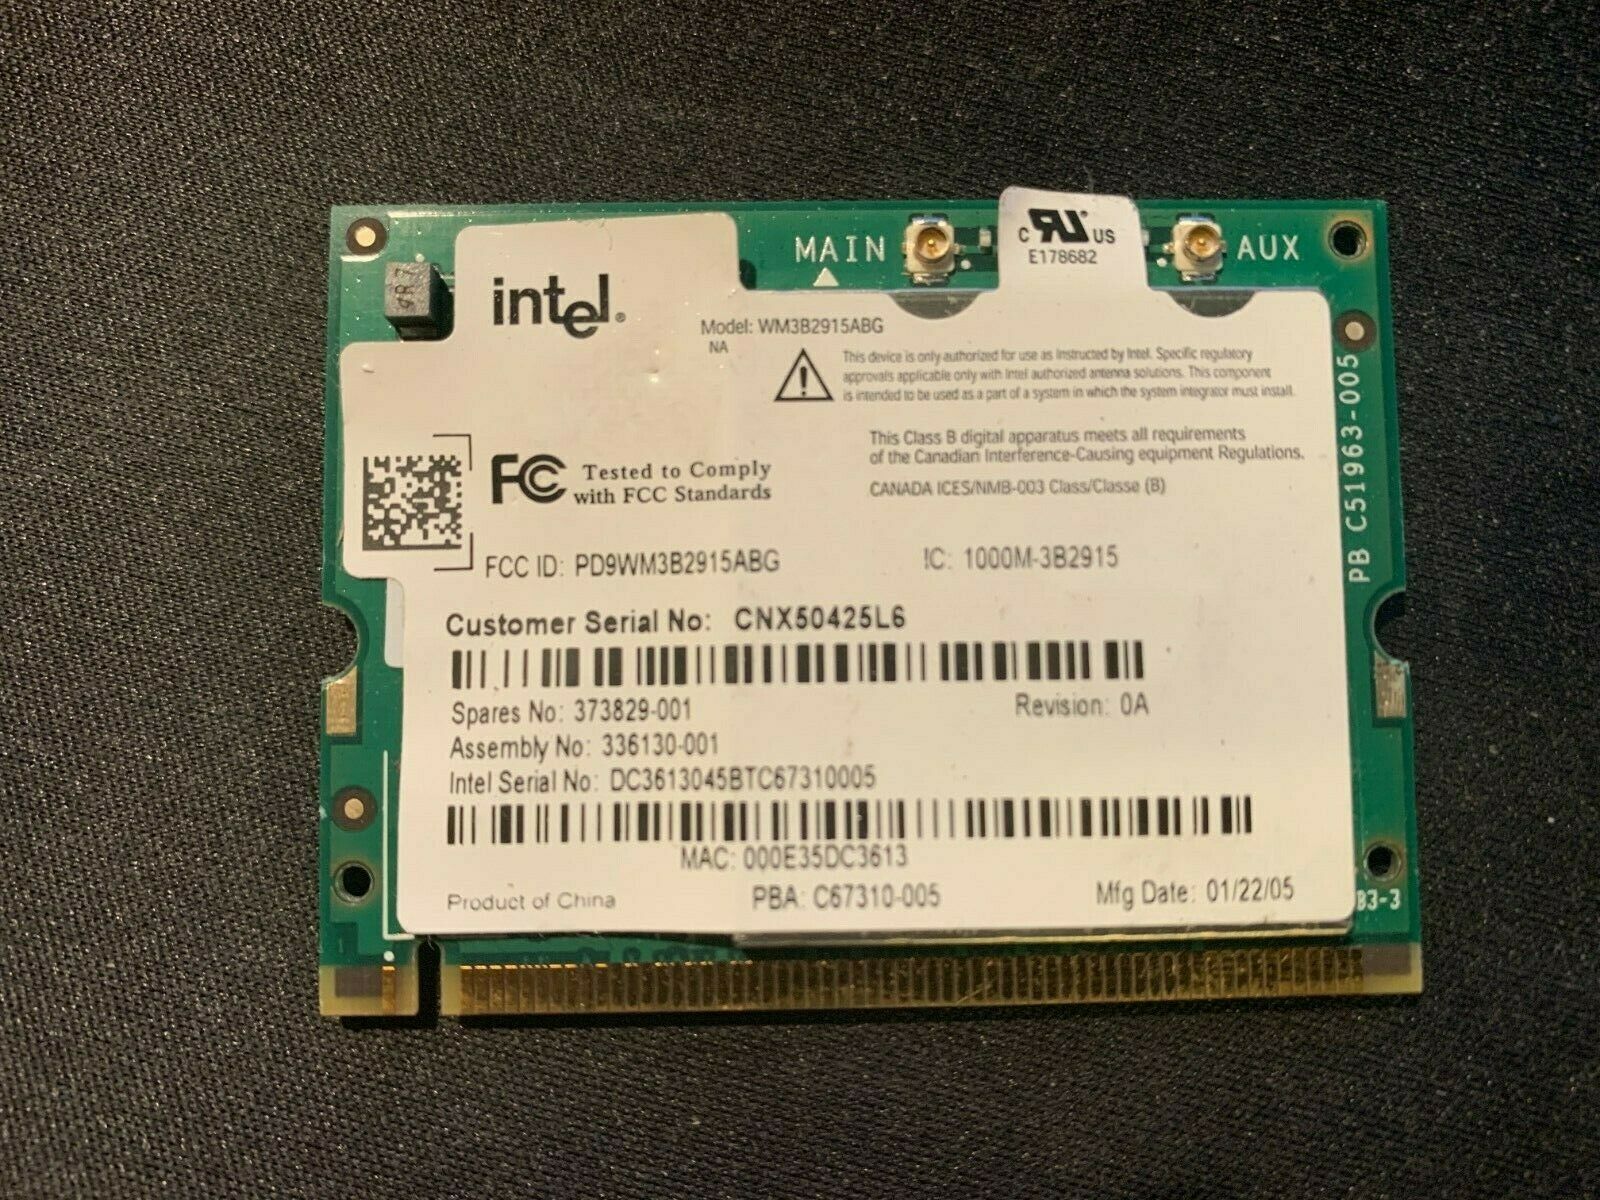 NEW OEM Intel PRO WM3B2200BG Wireless Internal Laptop Wi-Fi Card